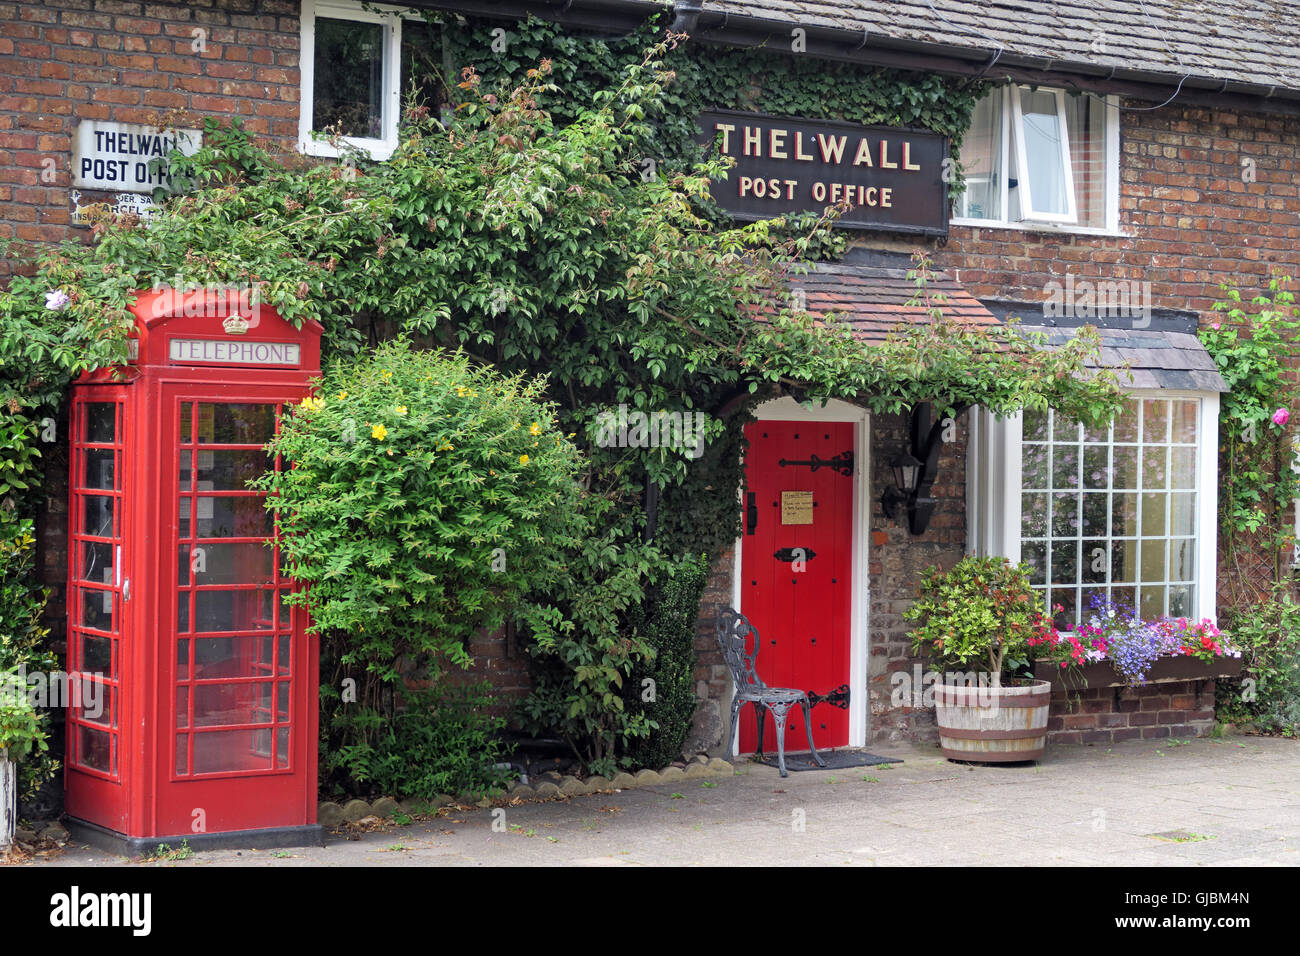 Le bureau de poste de Thelwall - ancien bureau de poste célèbre, Bell Lane, Thelwall, Warrington, Cheshire, Angleterre, Royaume-Uni Banque D'Images